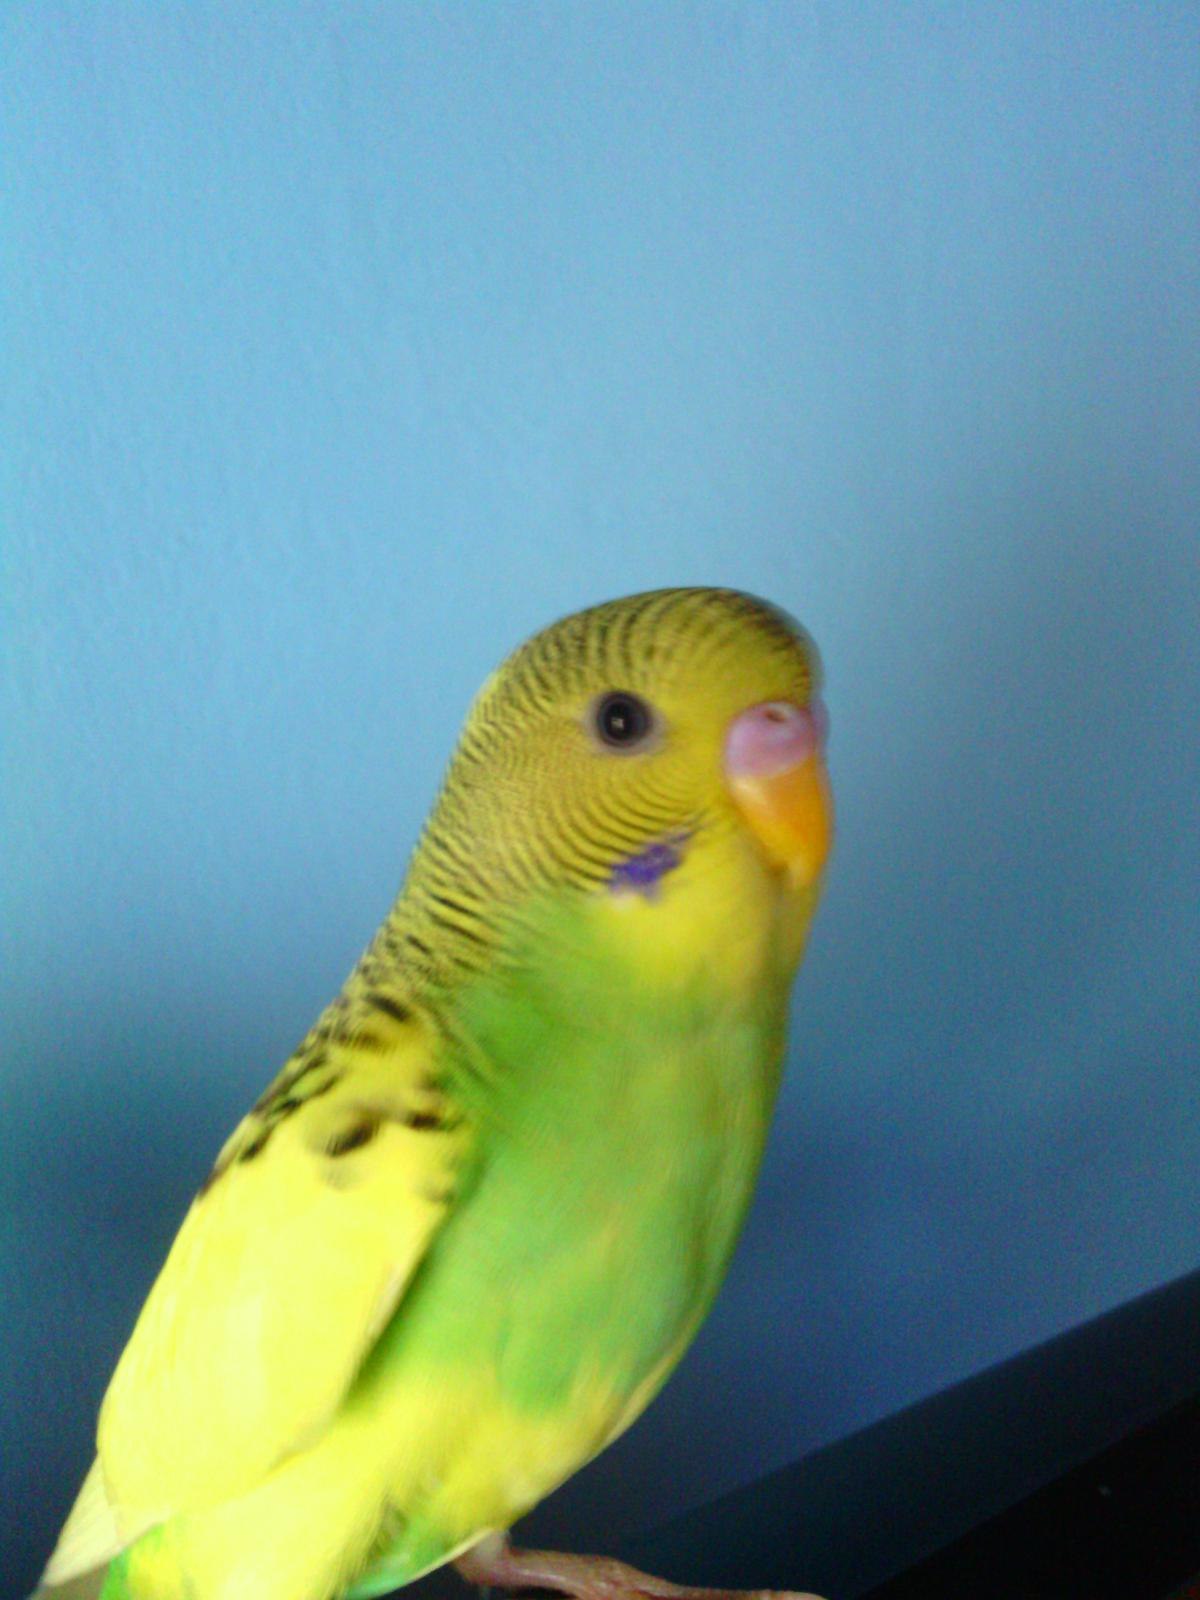 Фото молодого самца волнистого попугая